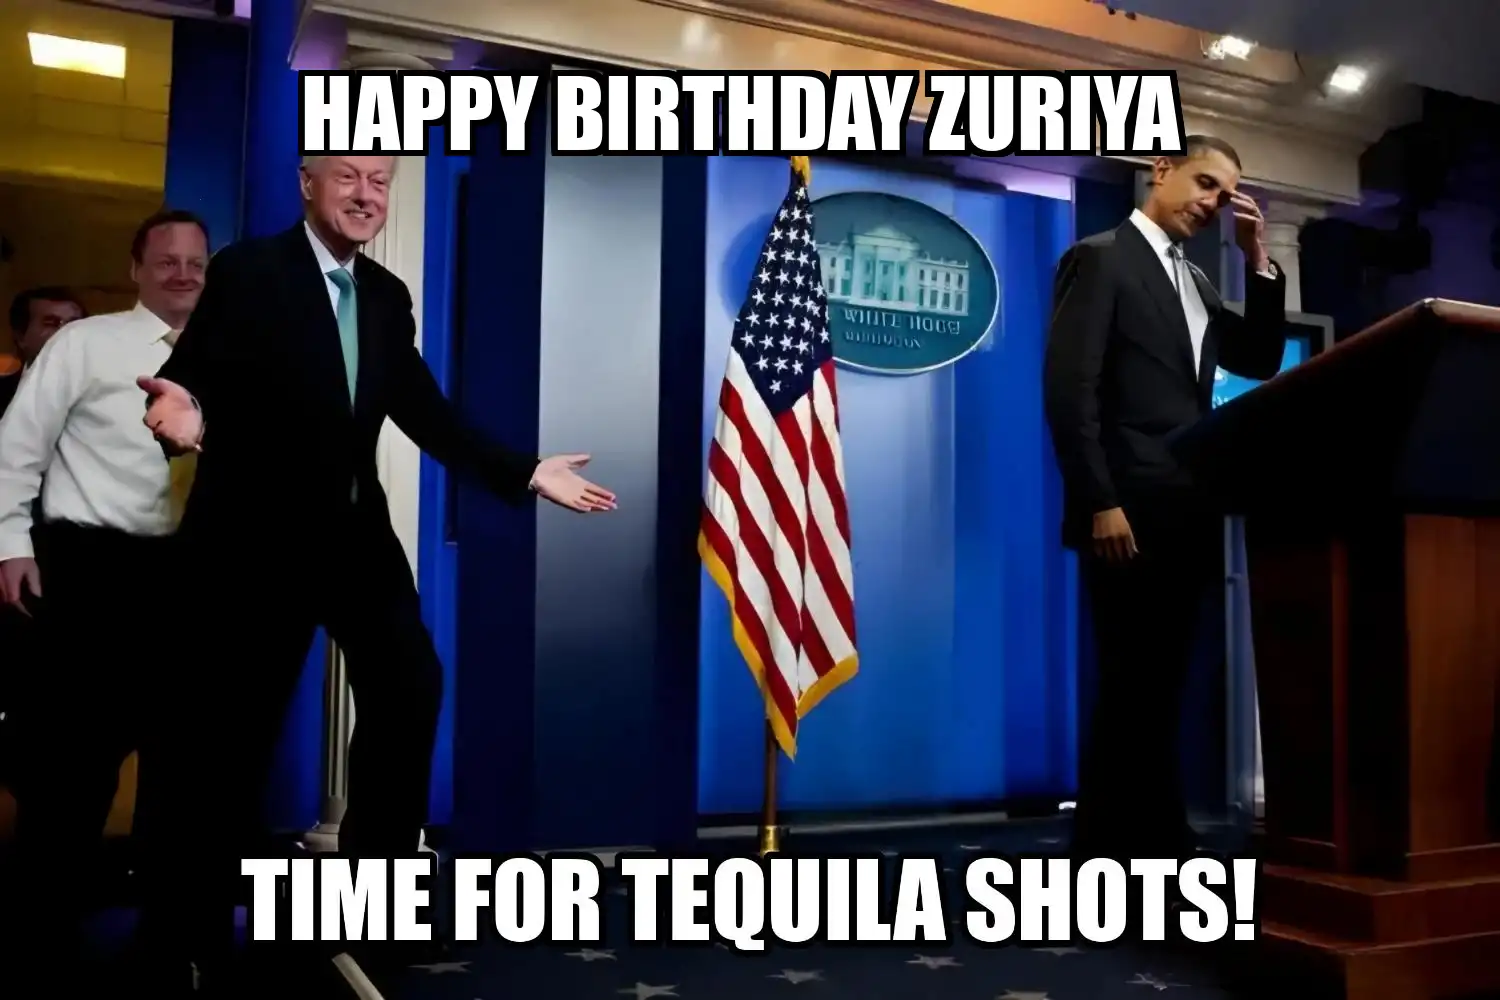 Happy Birthday Zuriya Time For Tequila Shots Memes